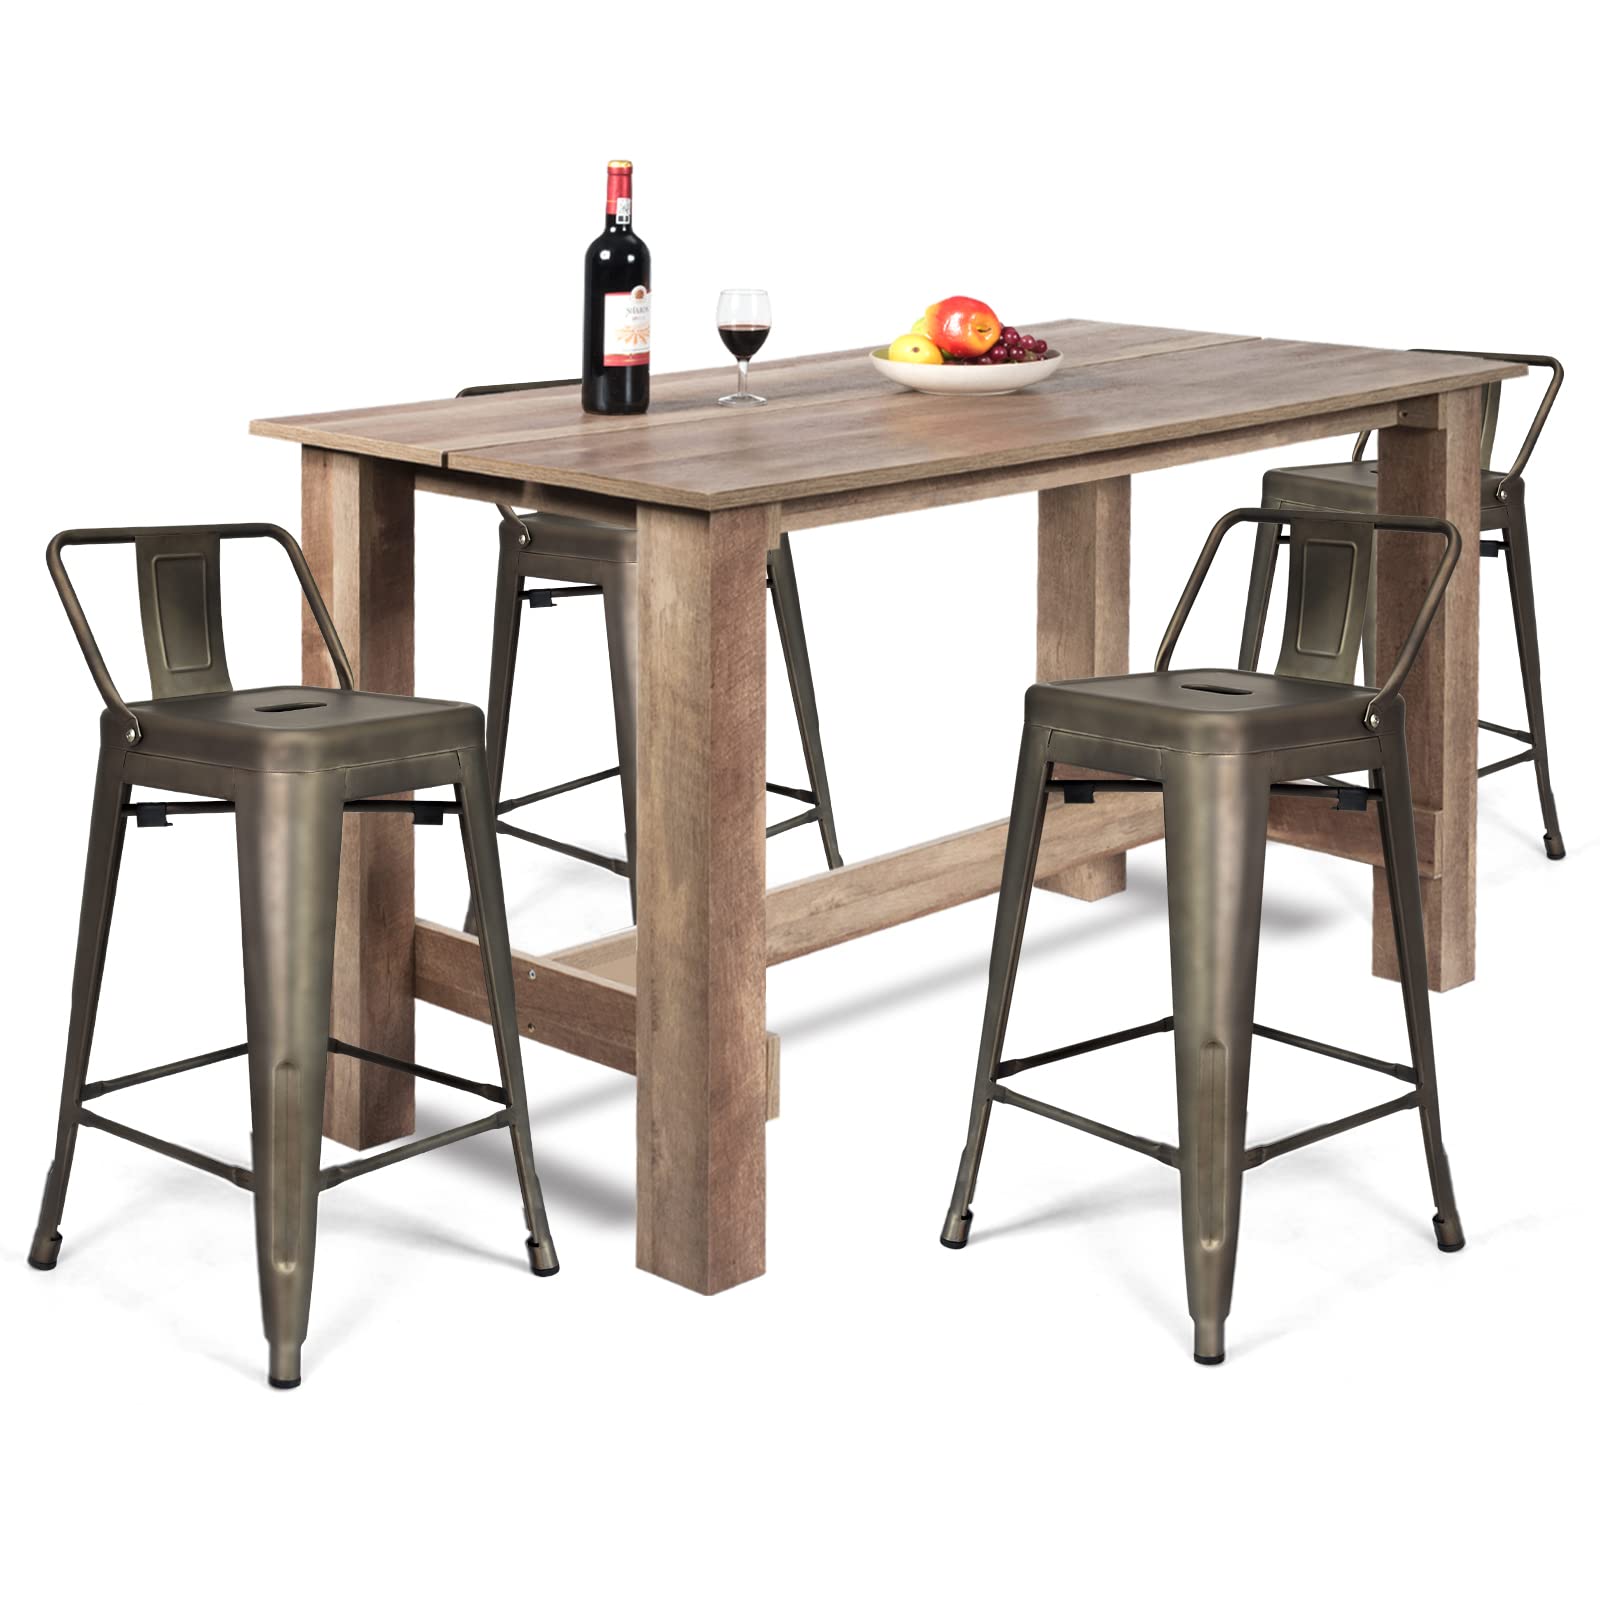 Giantex 5 Pieces Dining Table Set, Rectangular Counter Height Table w/ 4 Metal Bar Stools